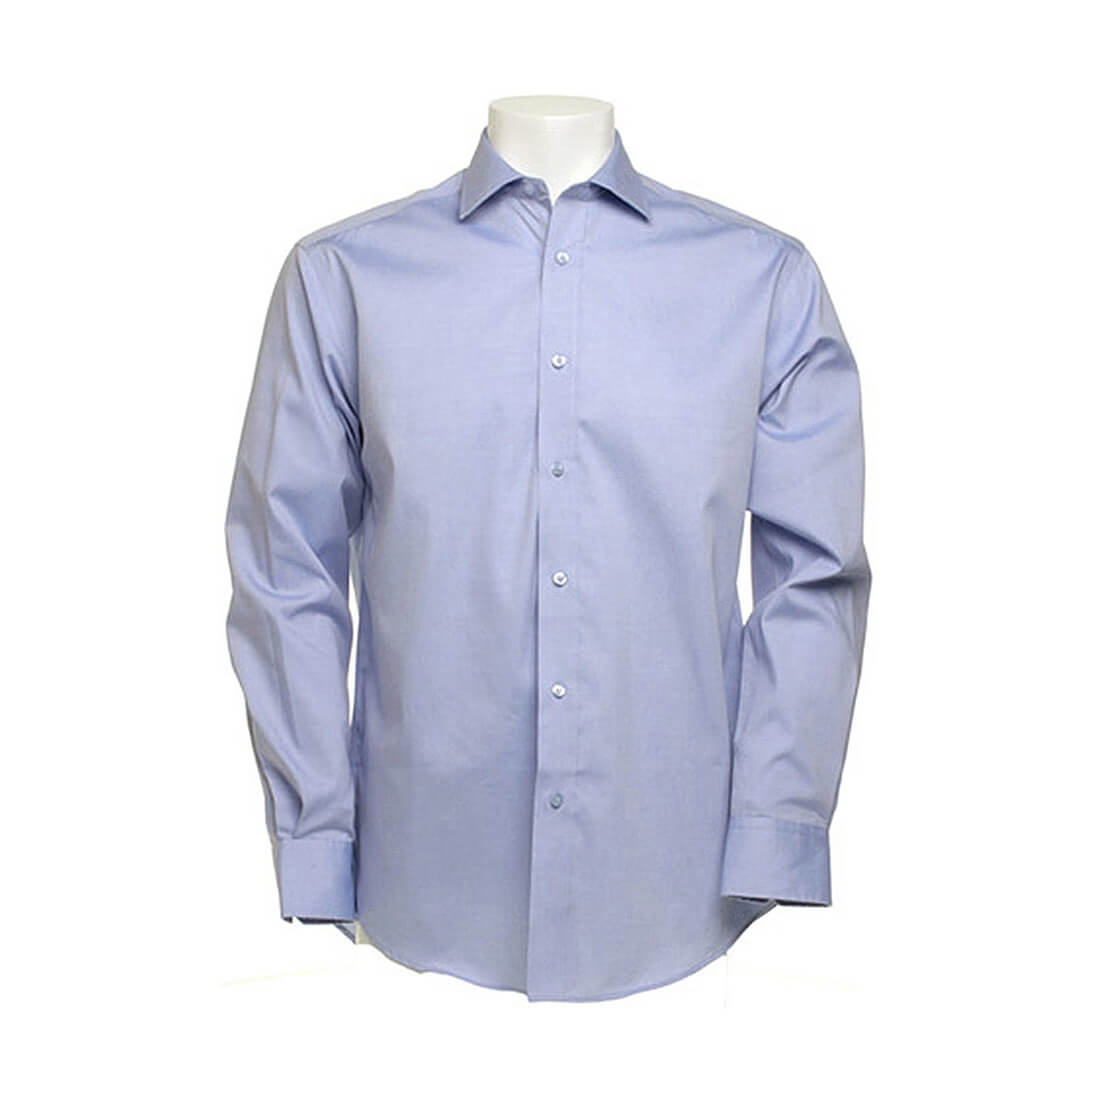 Executive Premium Oxford Shirt LS - Les vêtements de protection